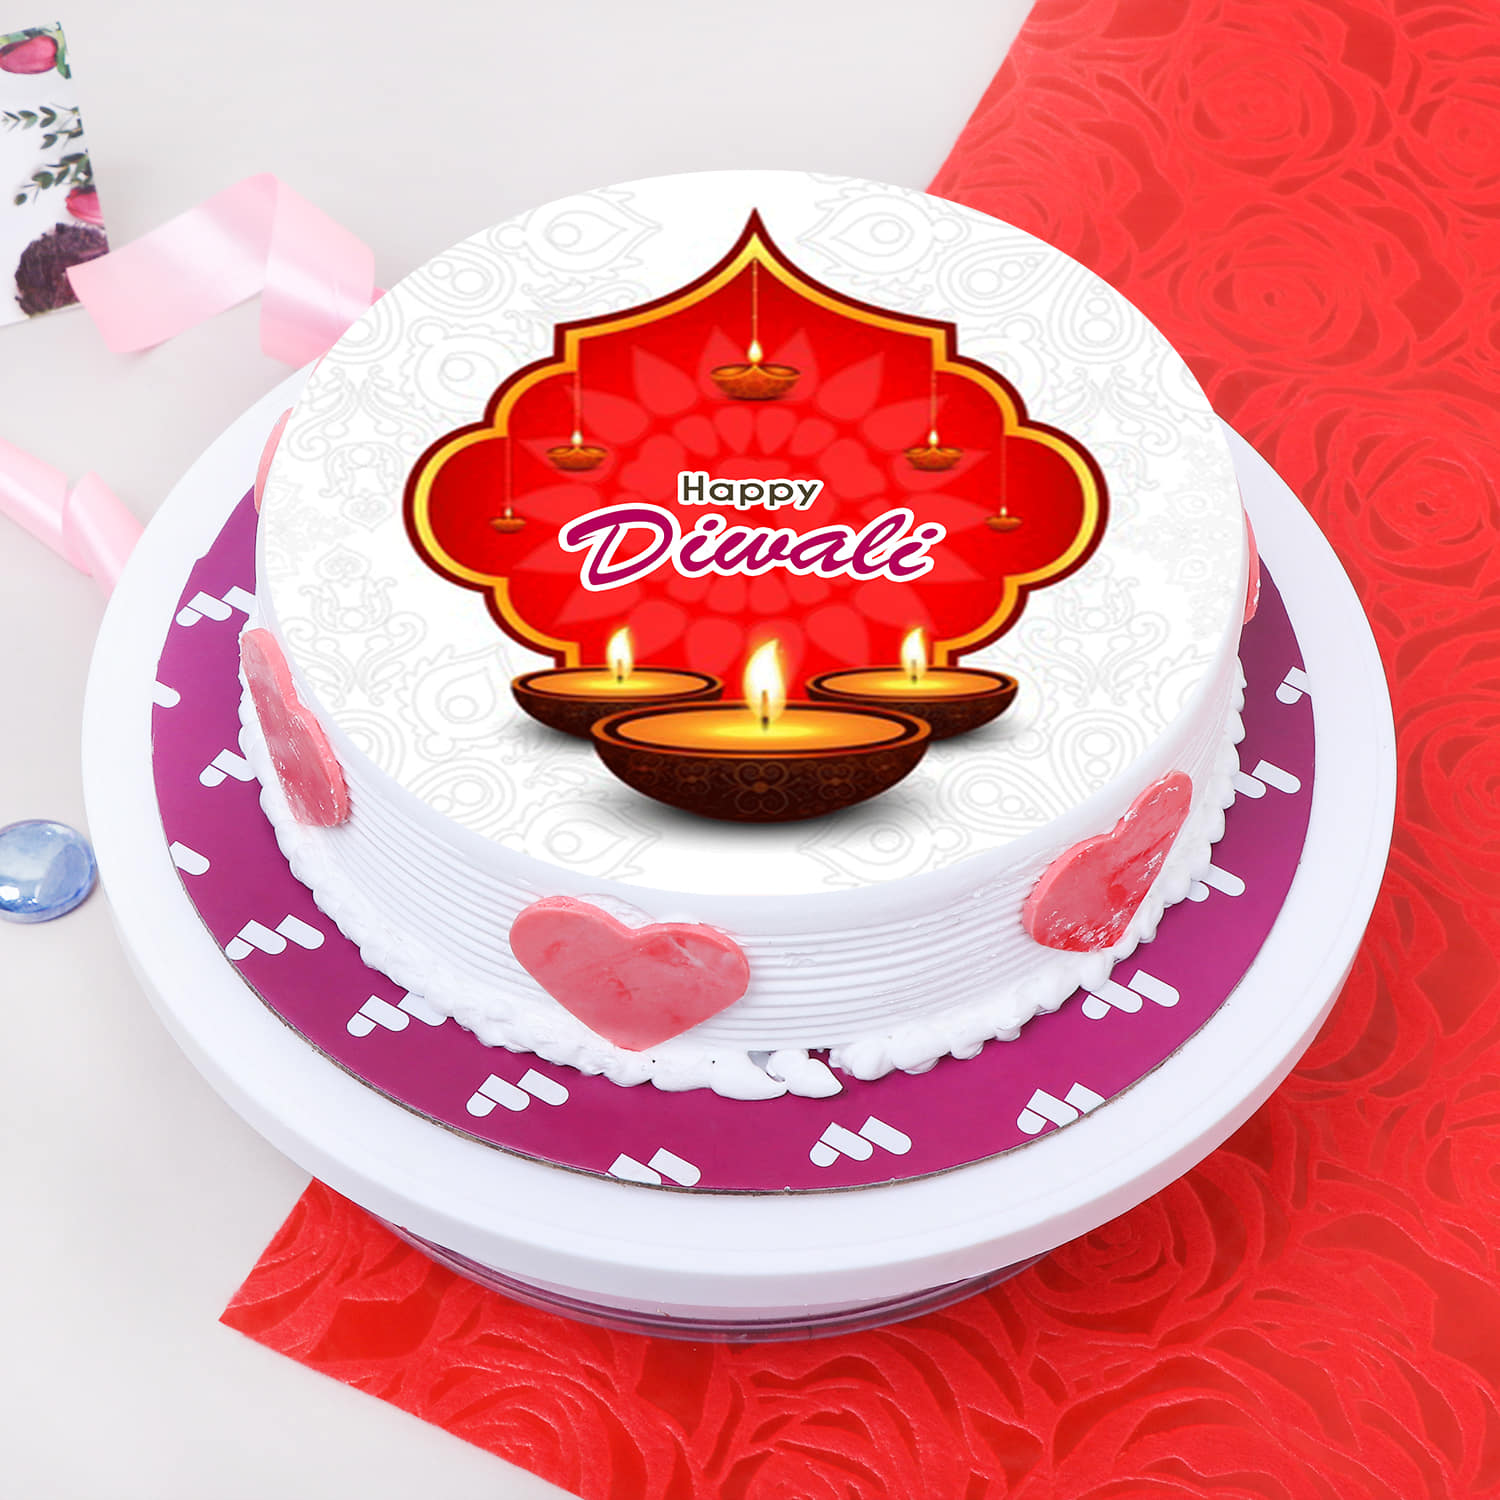 Diwali Cake Delivery, Buy/ Send Diwali Cakes Online | GoGift